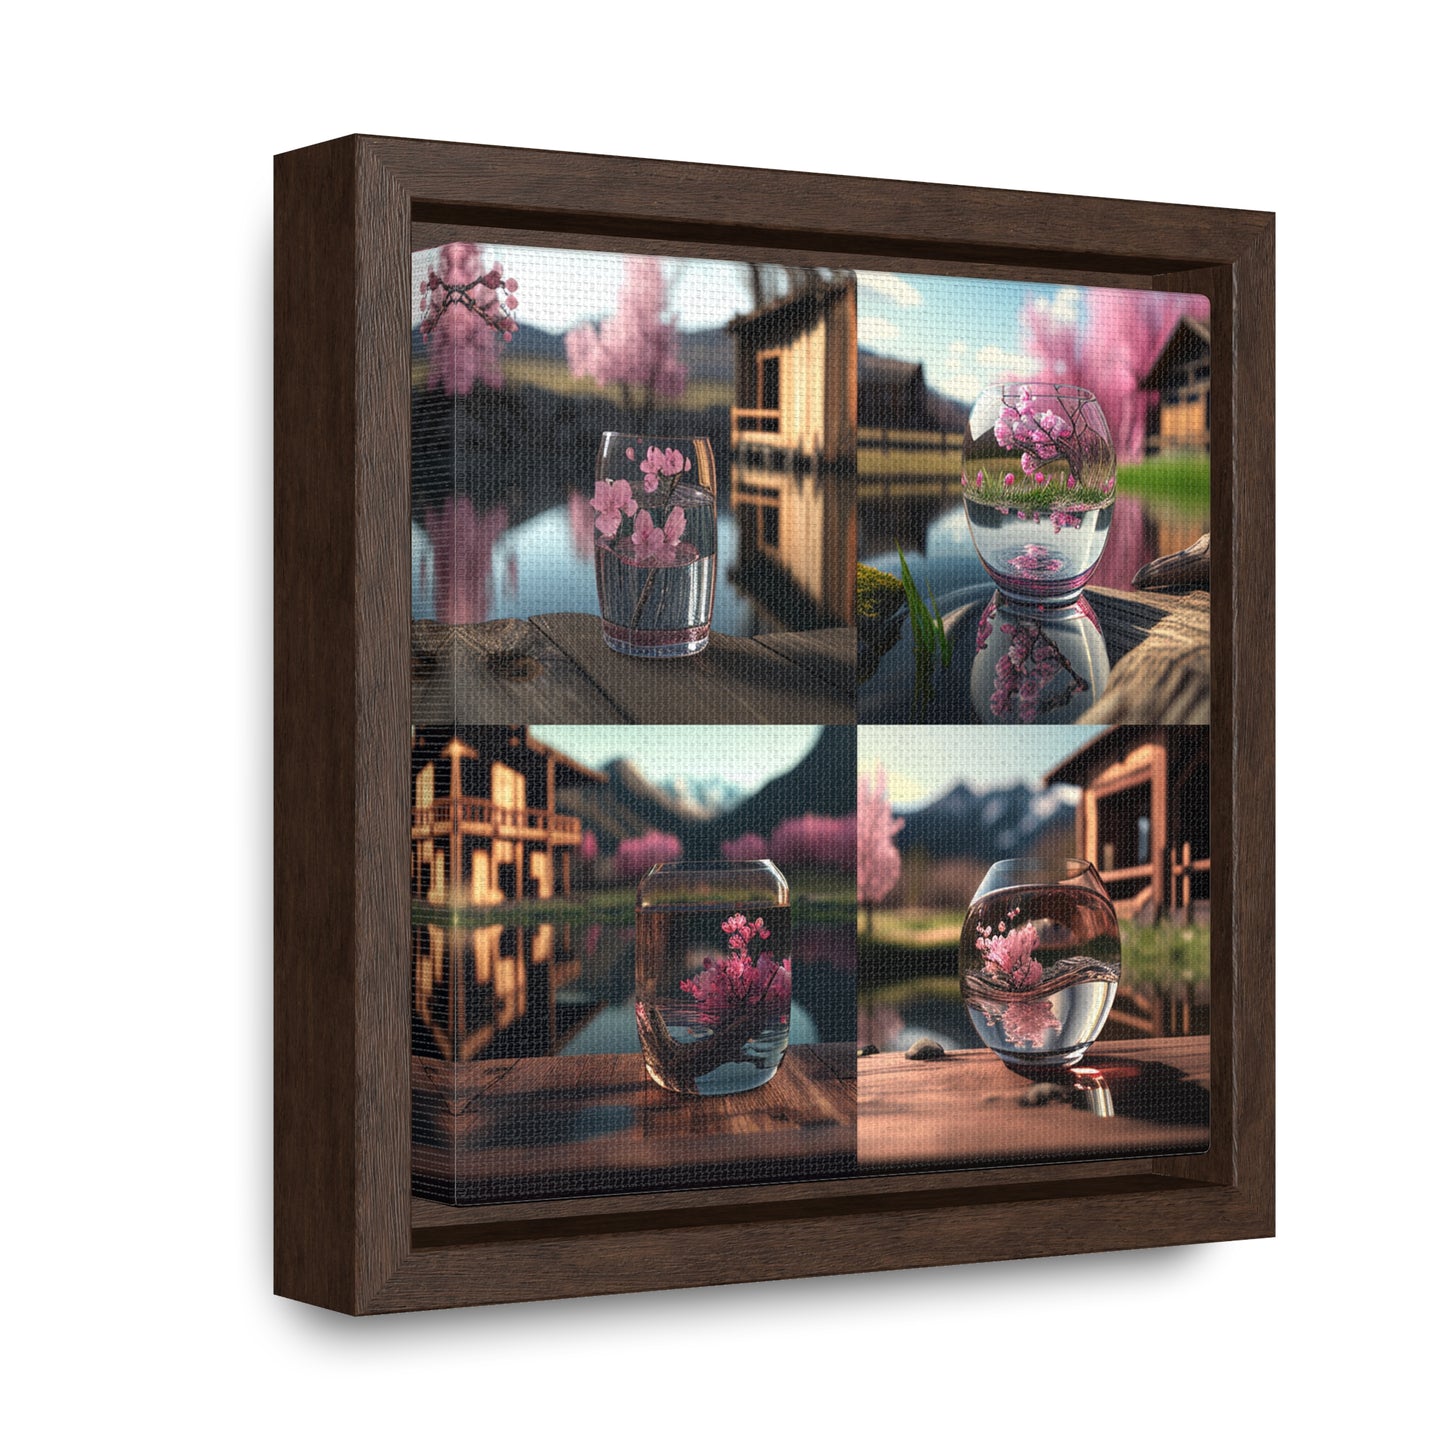 Gallery Canvas Wraps, Square Frame Cherry Blossom 5